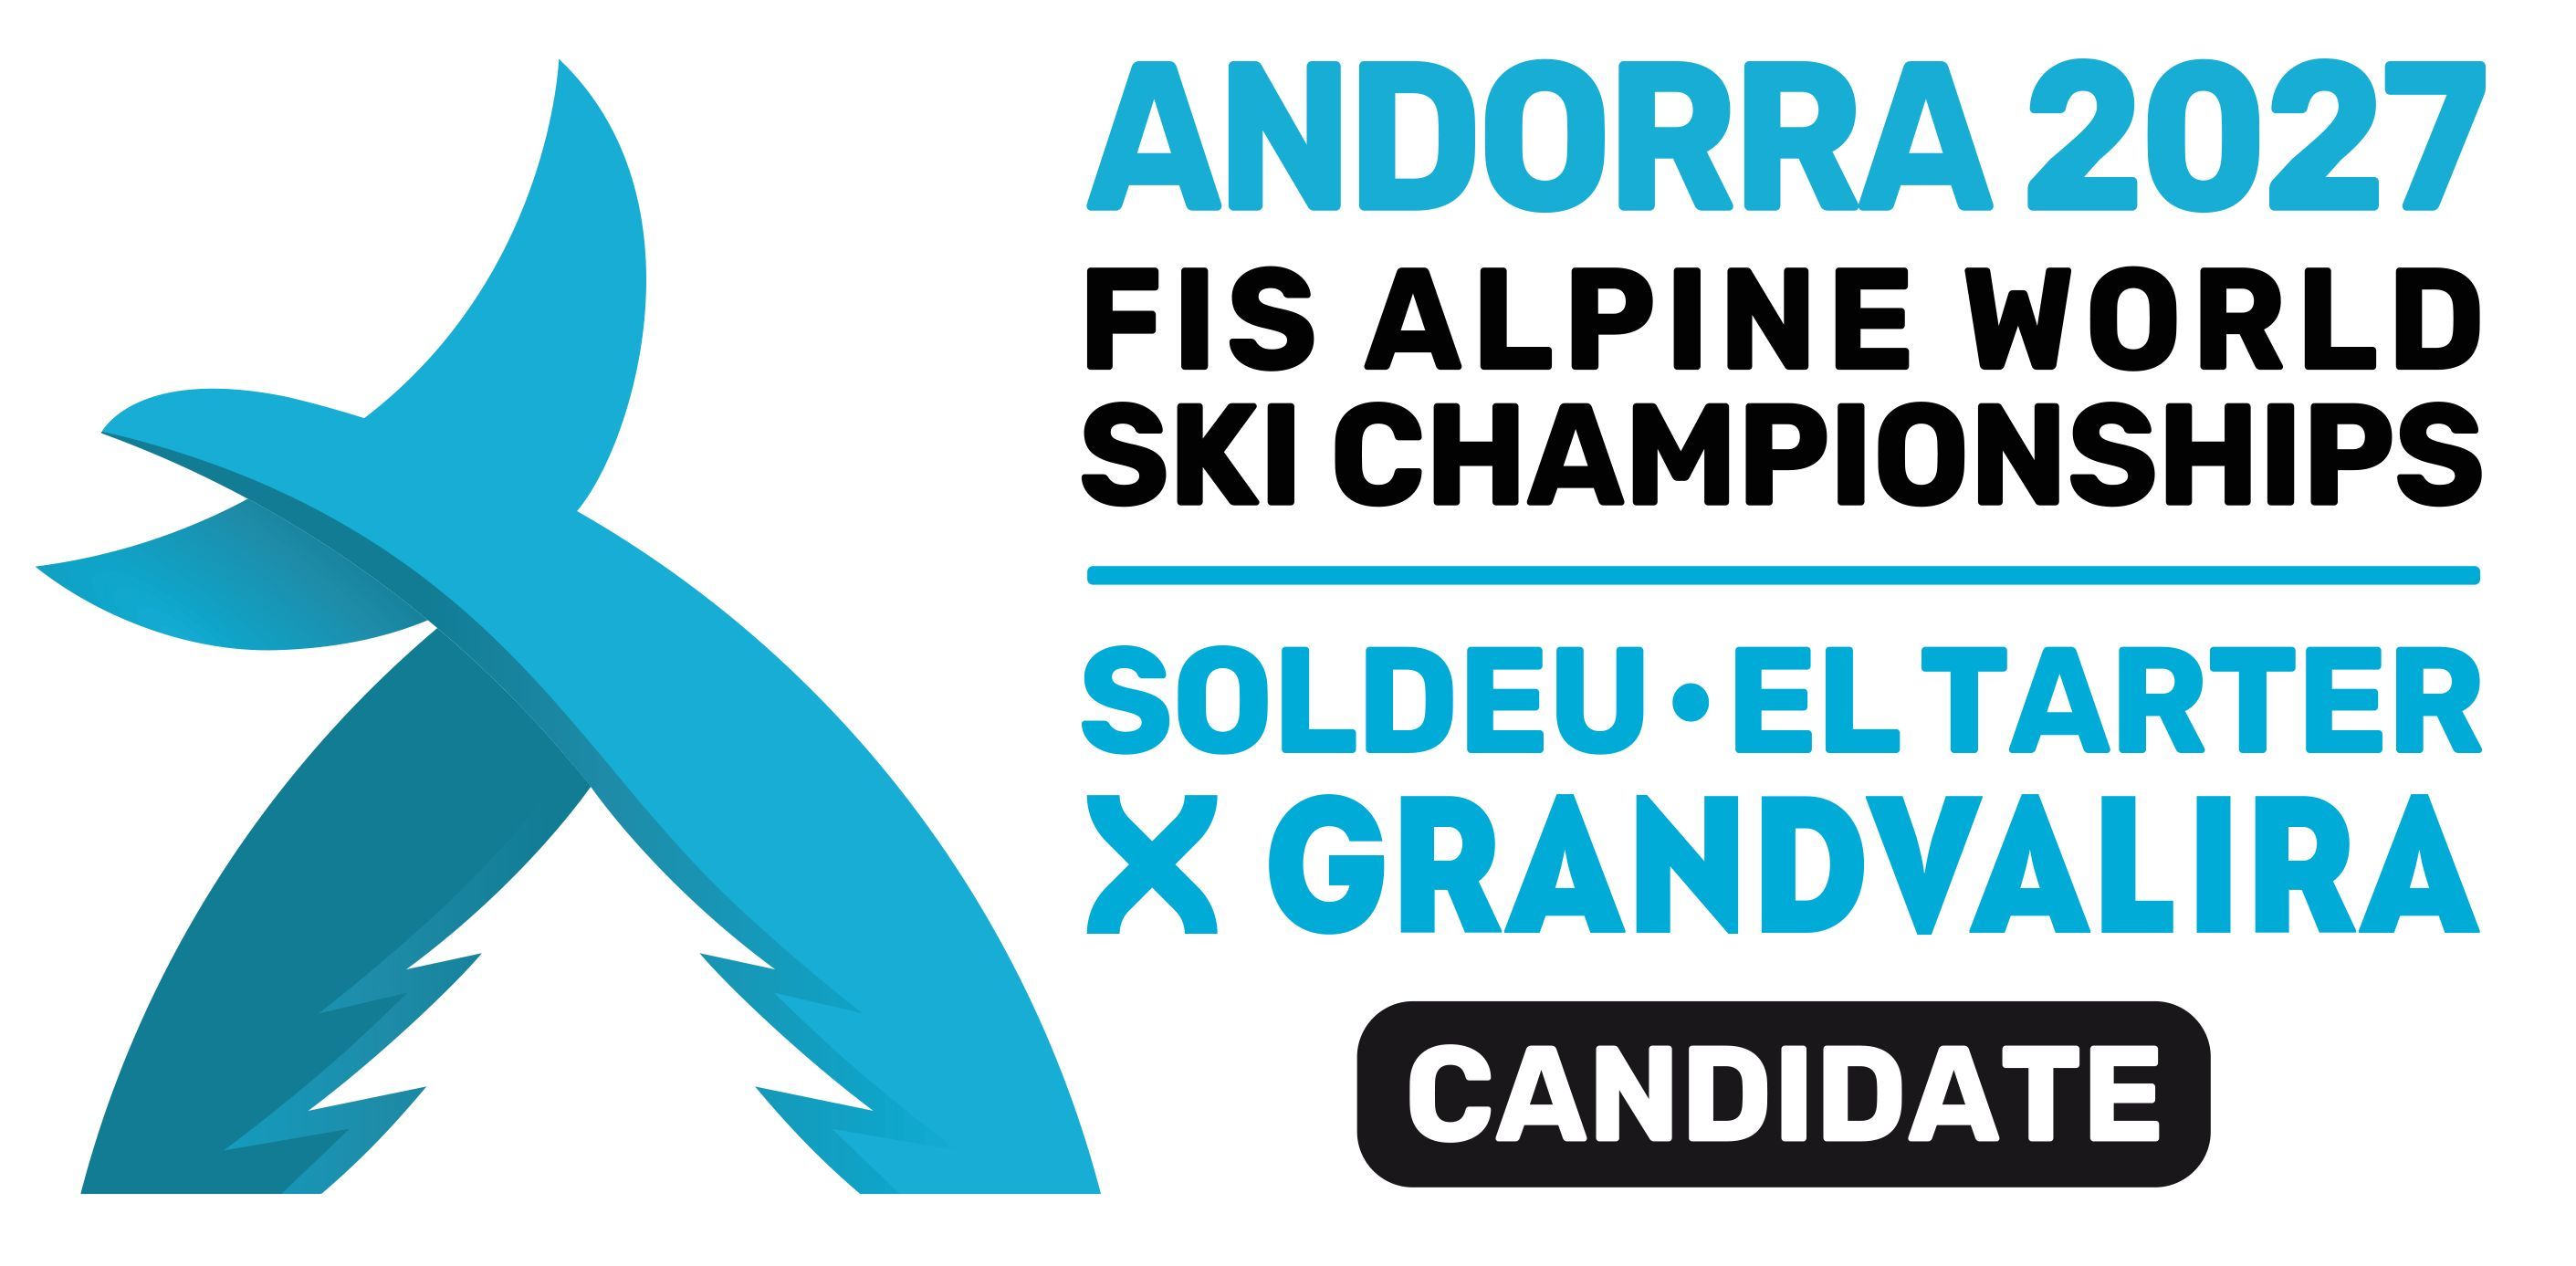 Logotipo de los Campeonatos del Mundo Andorra 2027